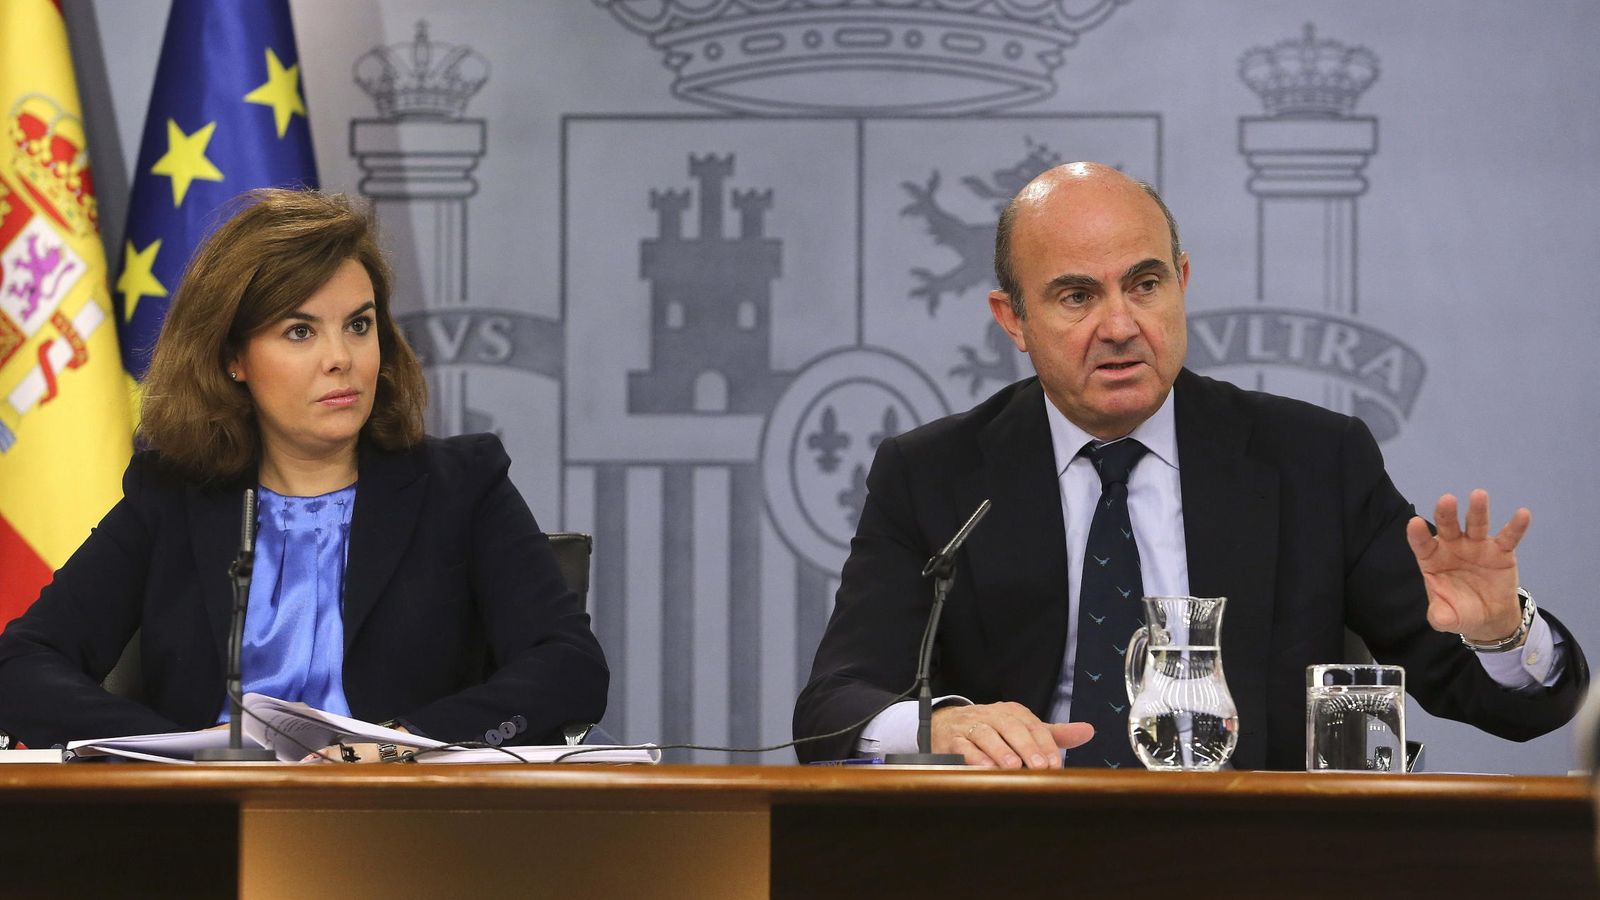 Foto: La vicepresidenta del Gobierno en funciones, Soraya Sáenz de Santamaría y el ministro de Economía y Competitividad, Luis de Guindos. (EFE)